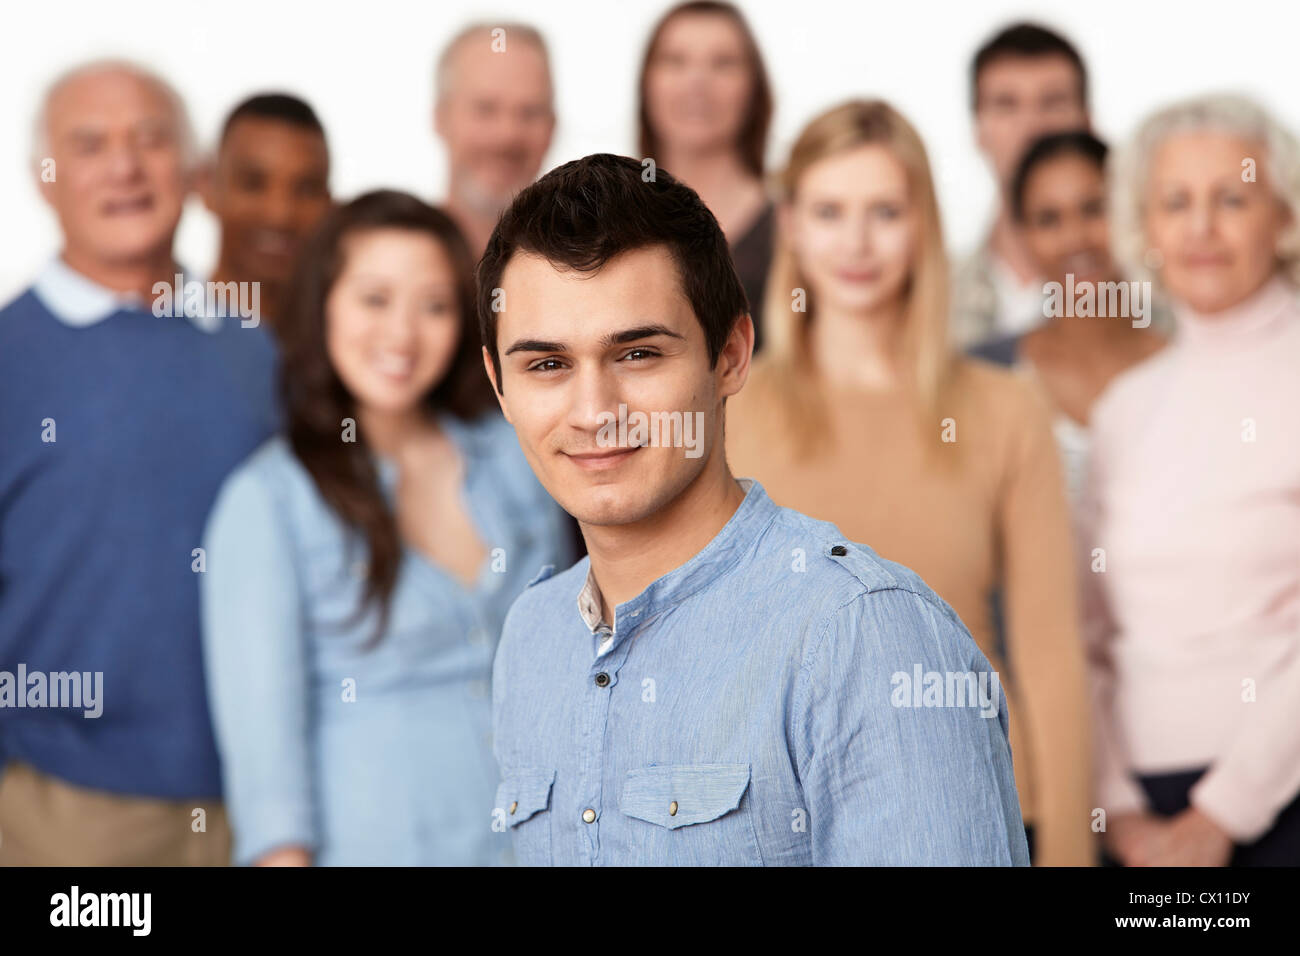 Ritratto di uomo con un gruppo di persone in background Foto Stock